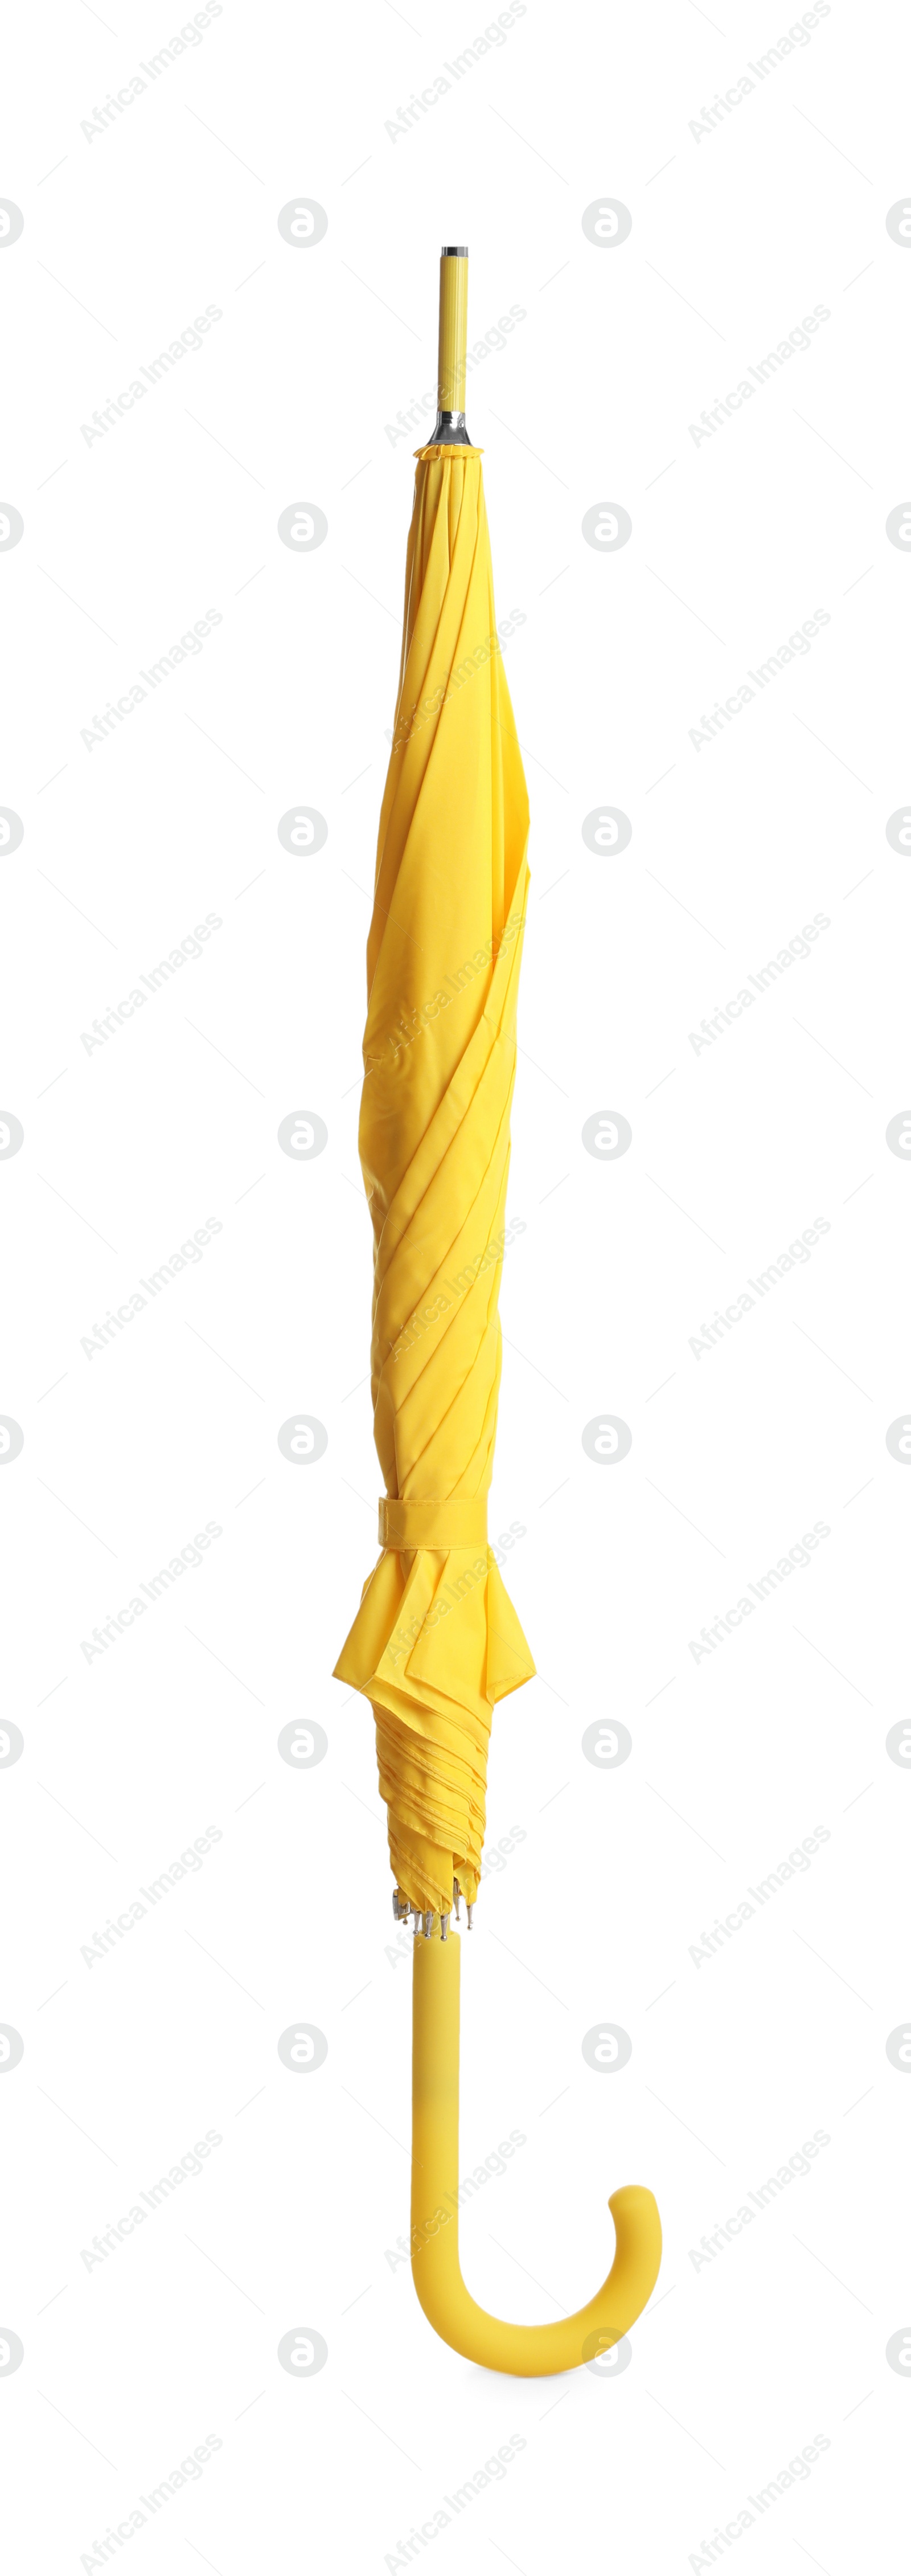 Photo of Stylish closed yellow umbrella isolated on white